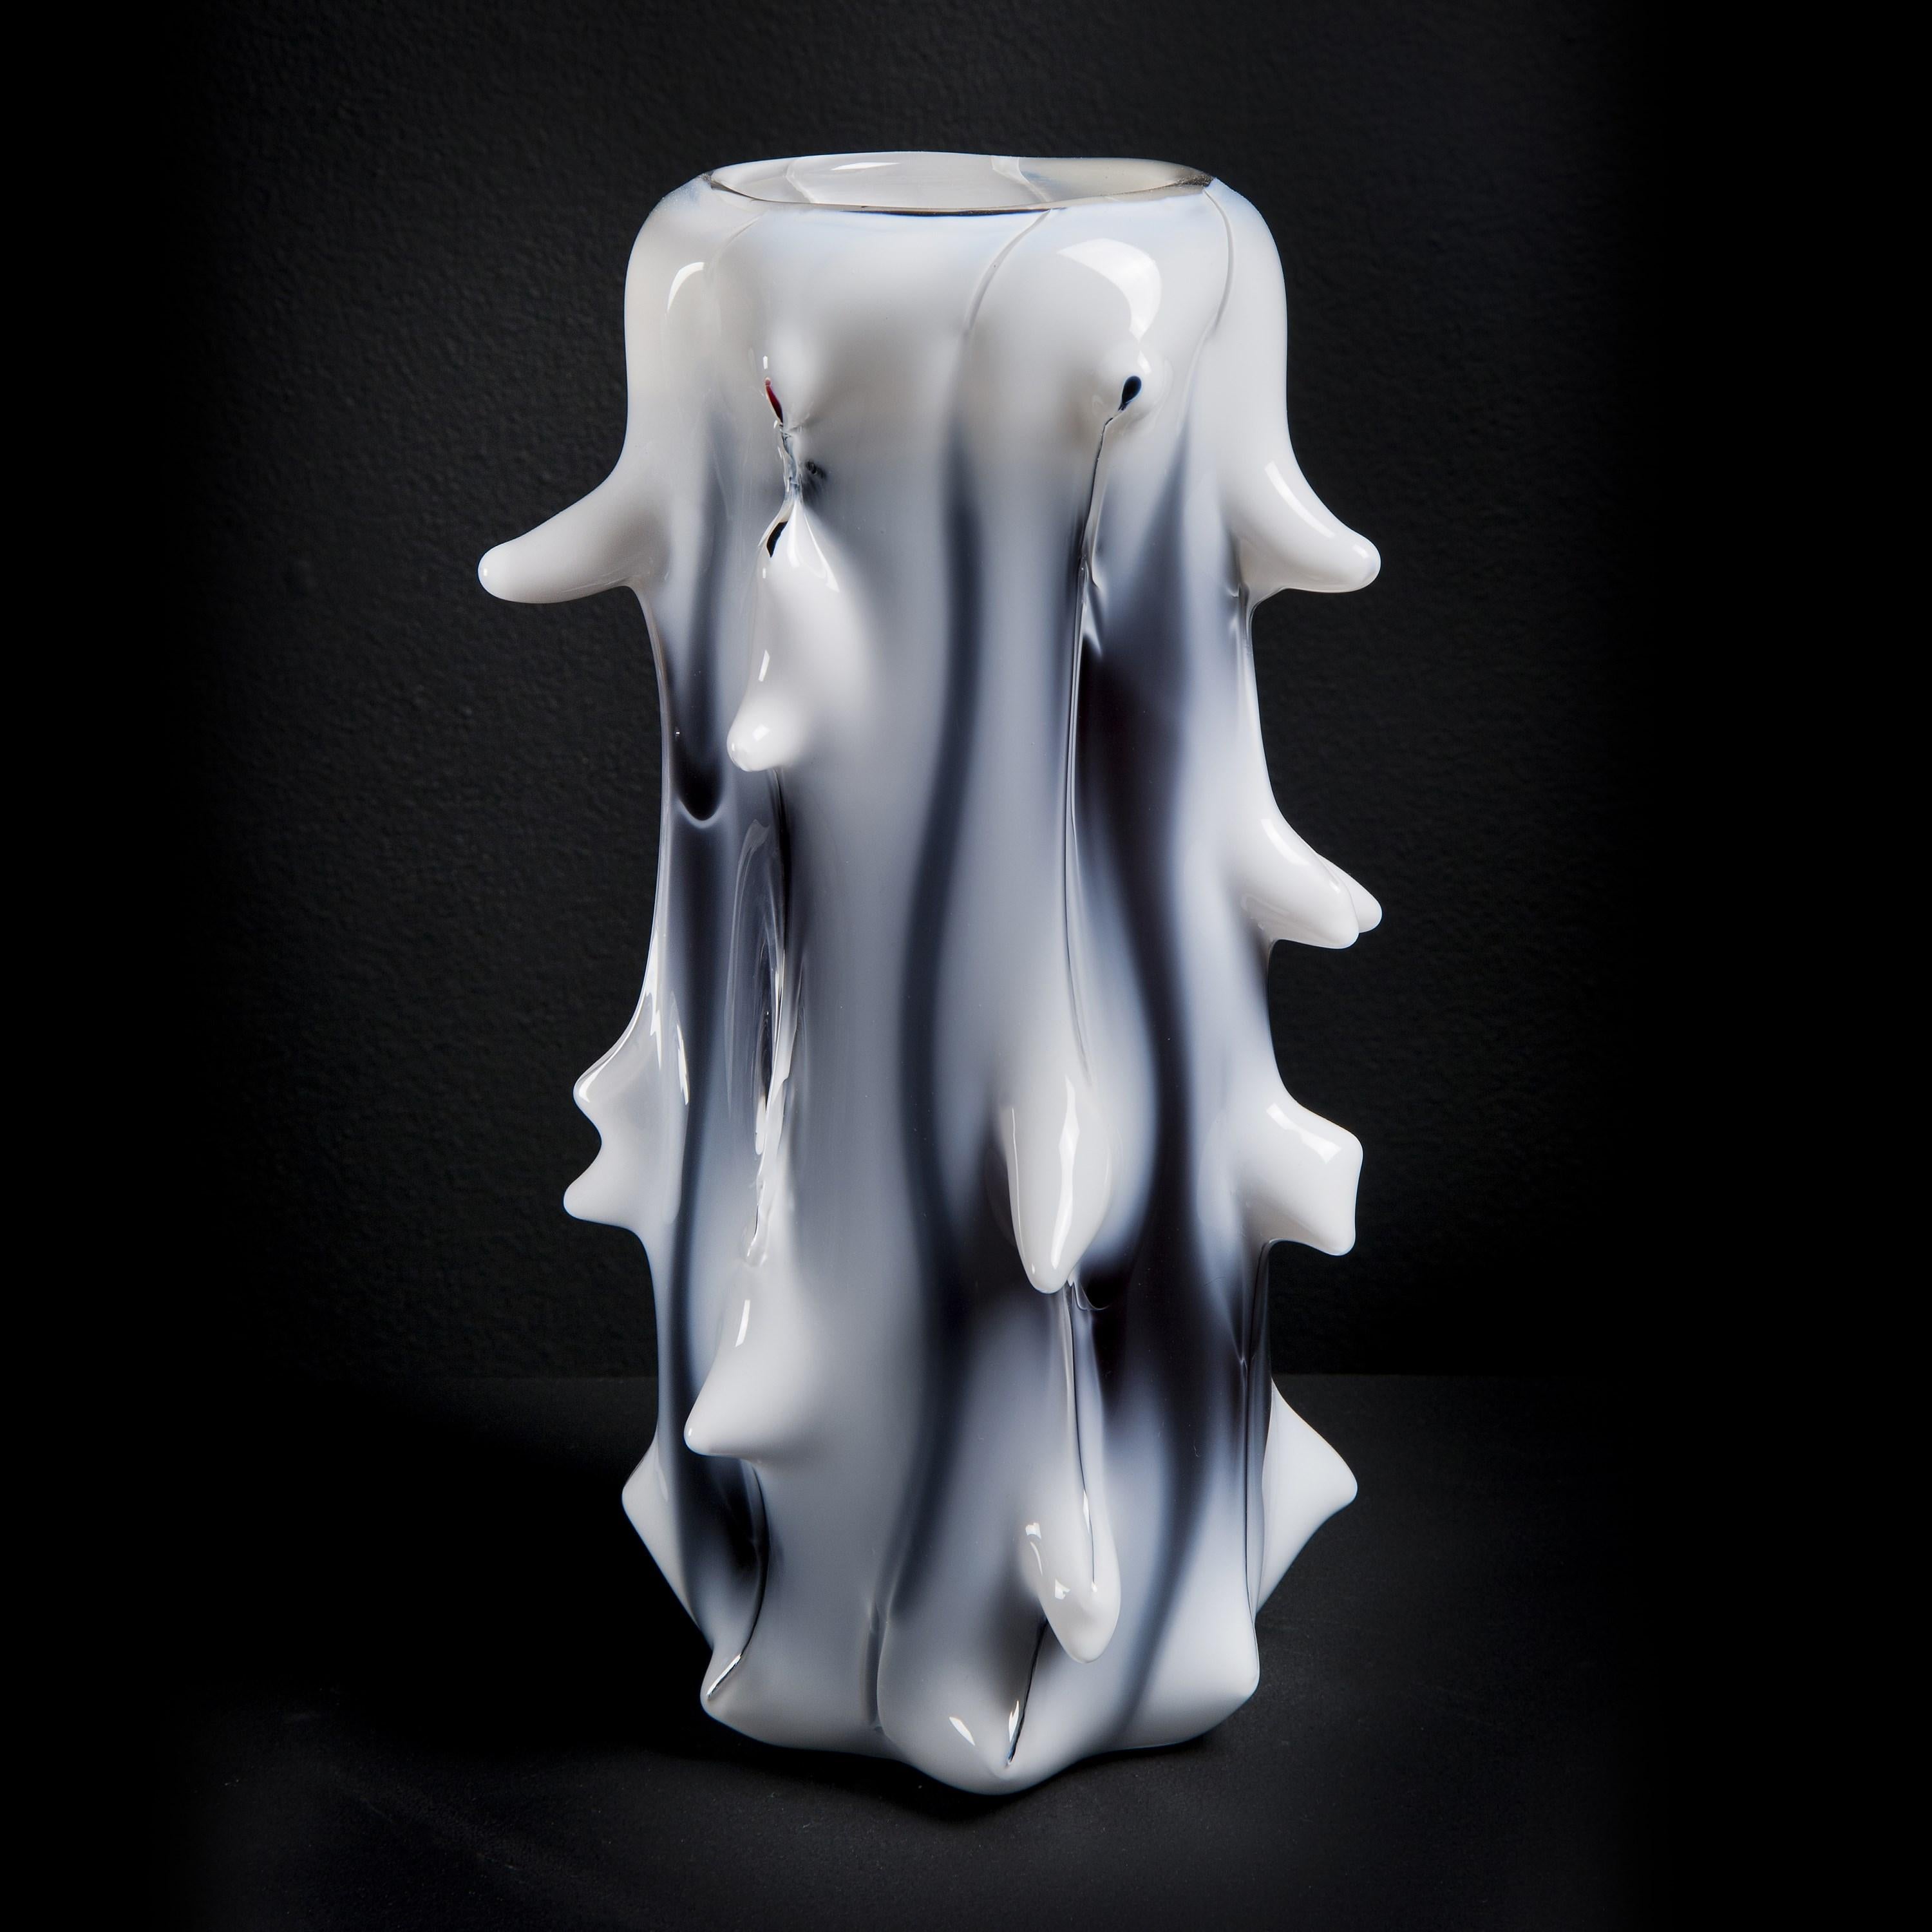 Spinal III est un vase en verre blanc et aubergine inspiré d'un arbre, réalisé en édition limitée (49 exemplaires) par l'artiste suédois Mårten Medbo.

Parmi ses œuvres, on trouve de nombreux exemples de pièces qui ressemblent à des structures